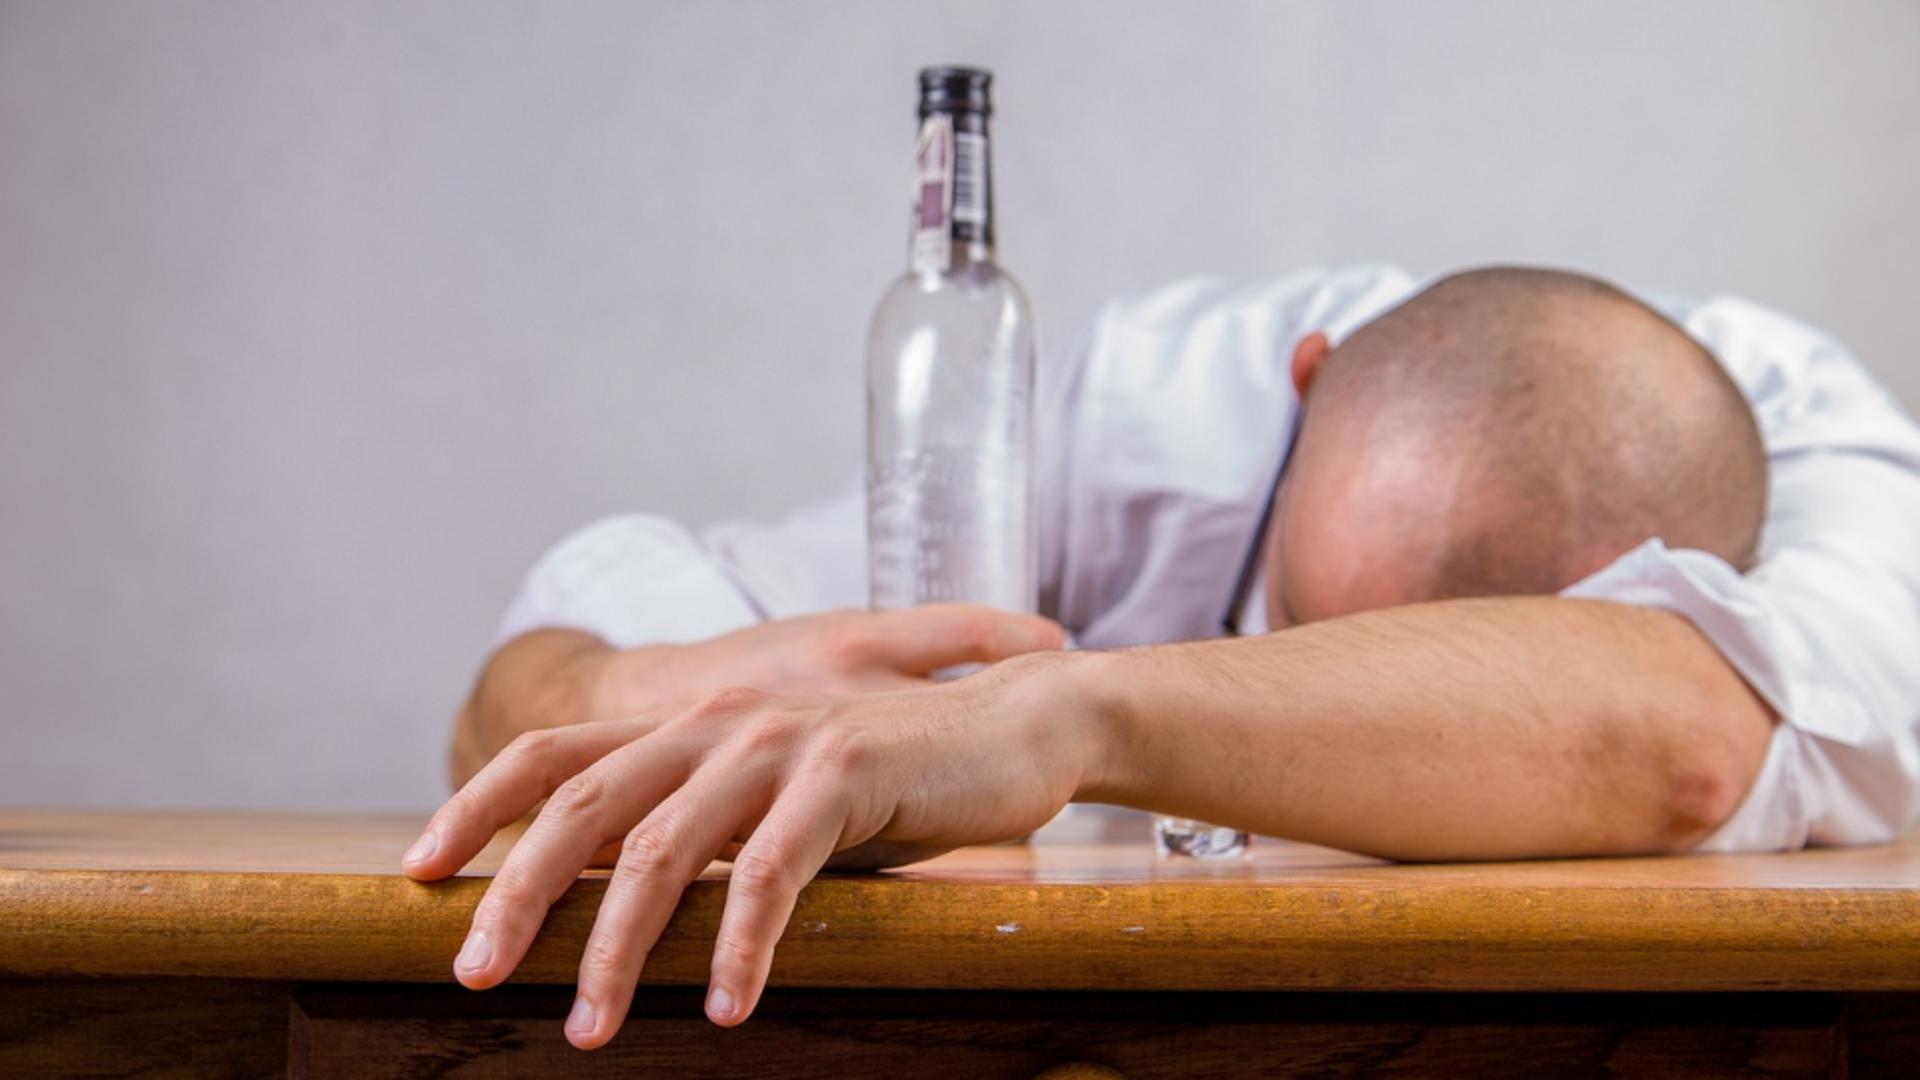 În topul mondial al alcoolicilor, România se clasează pe locul 14